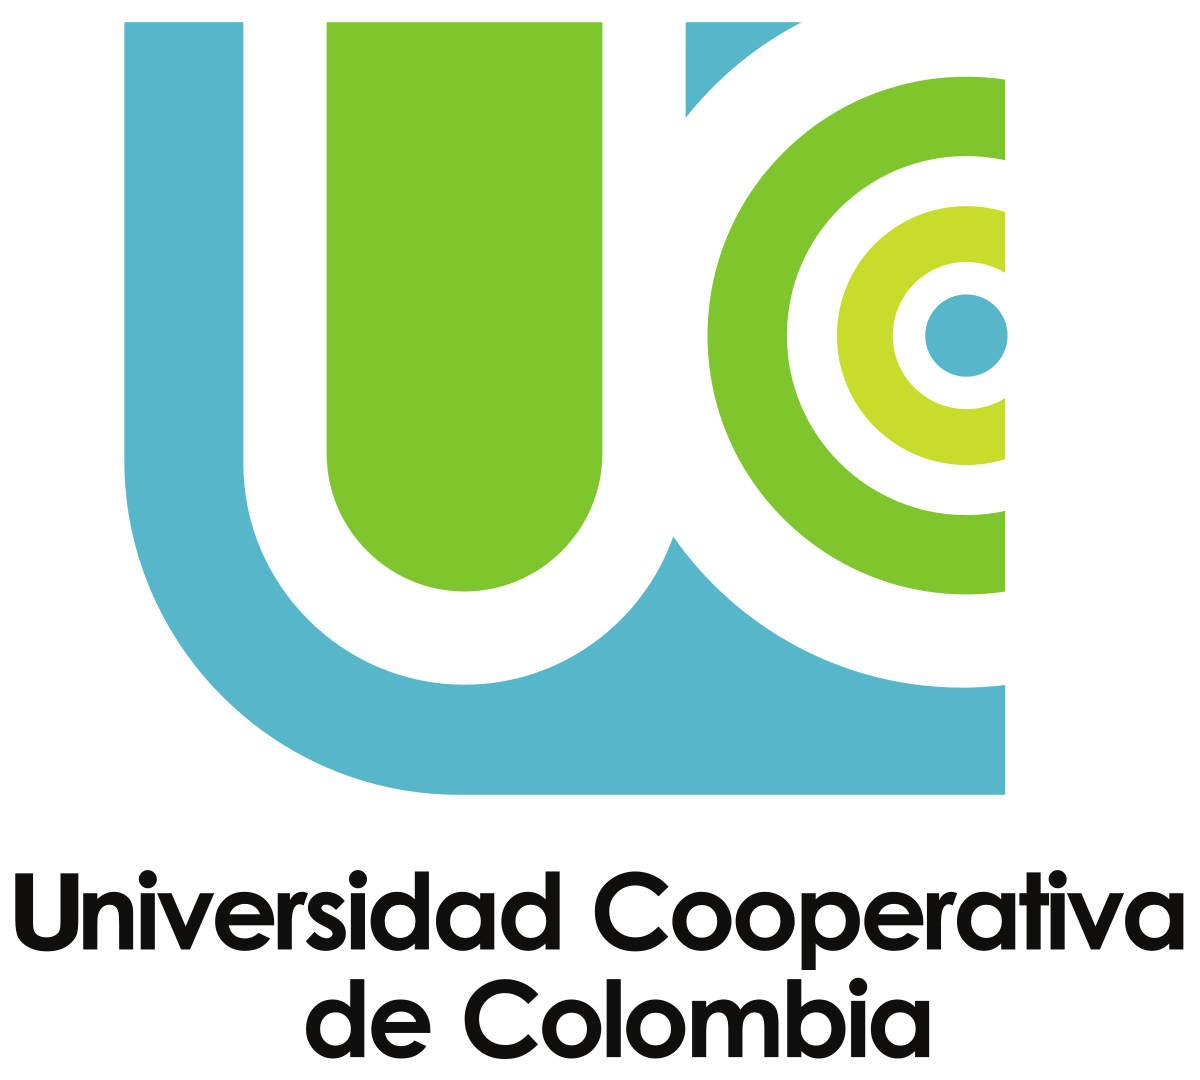 Universidad Cooperativa de Colombia - Wikipedia, la enciclopedia libre